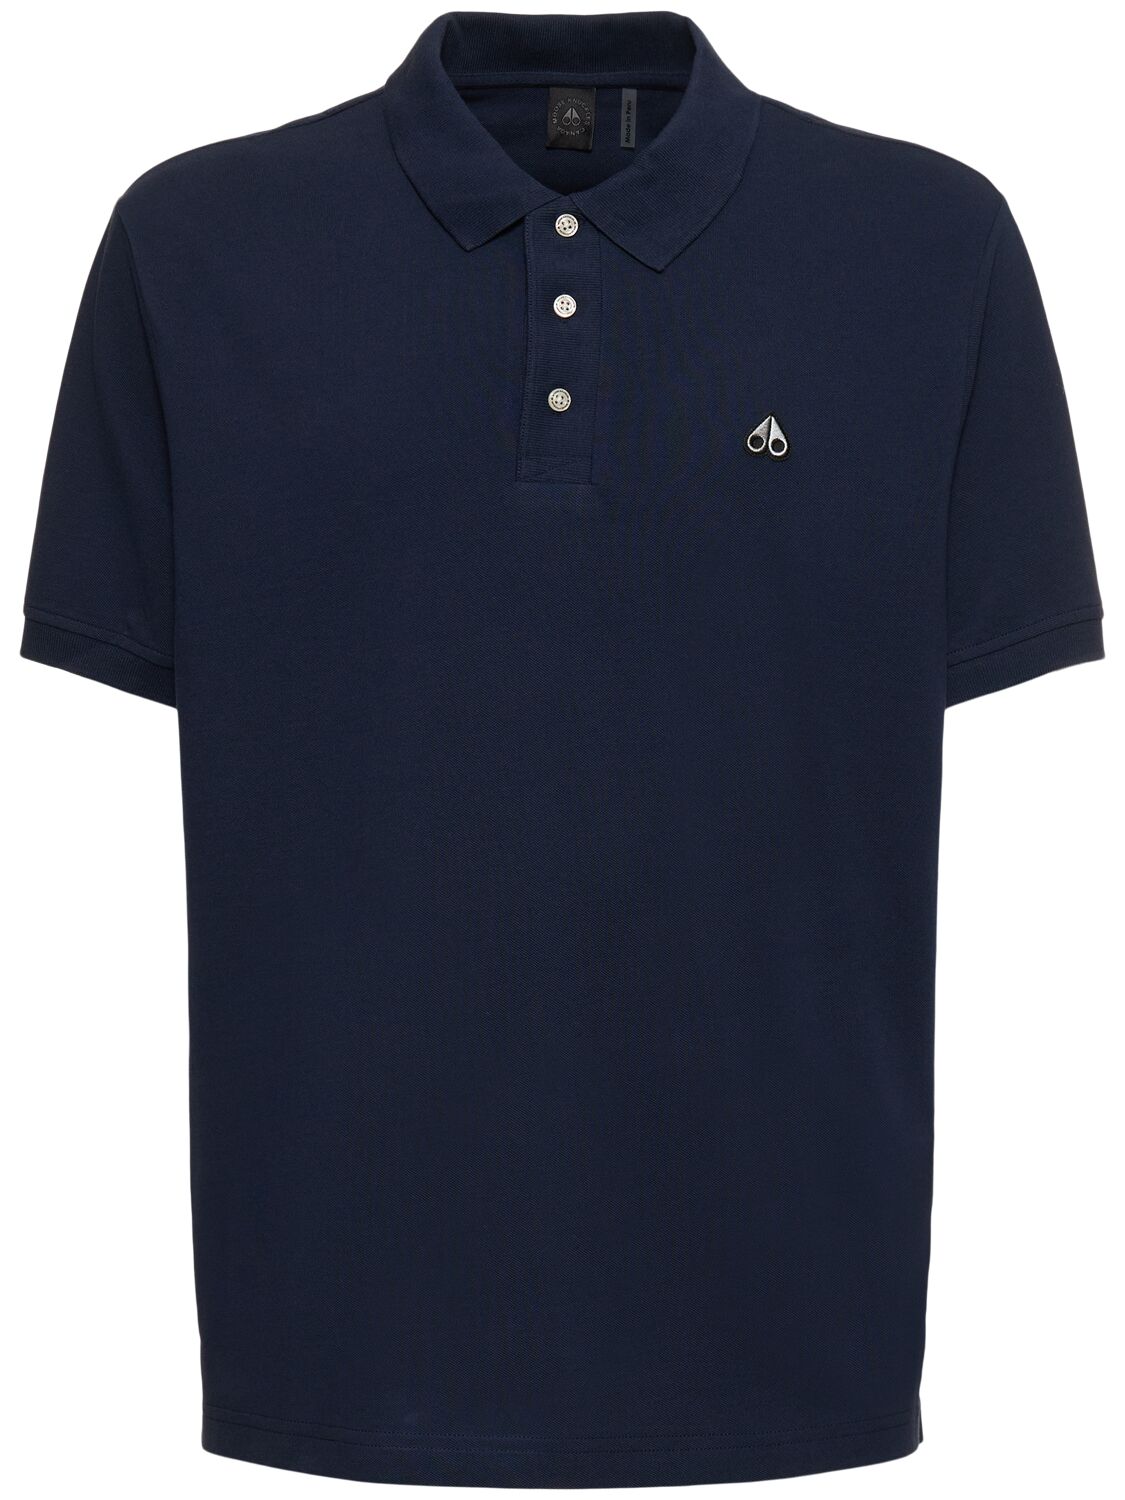 Image of Piqué Cotton Polo Shirt